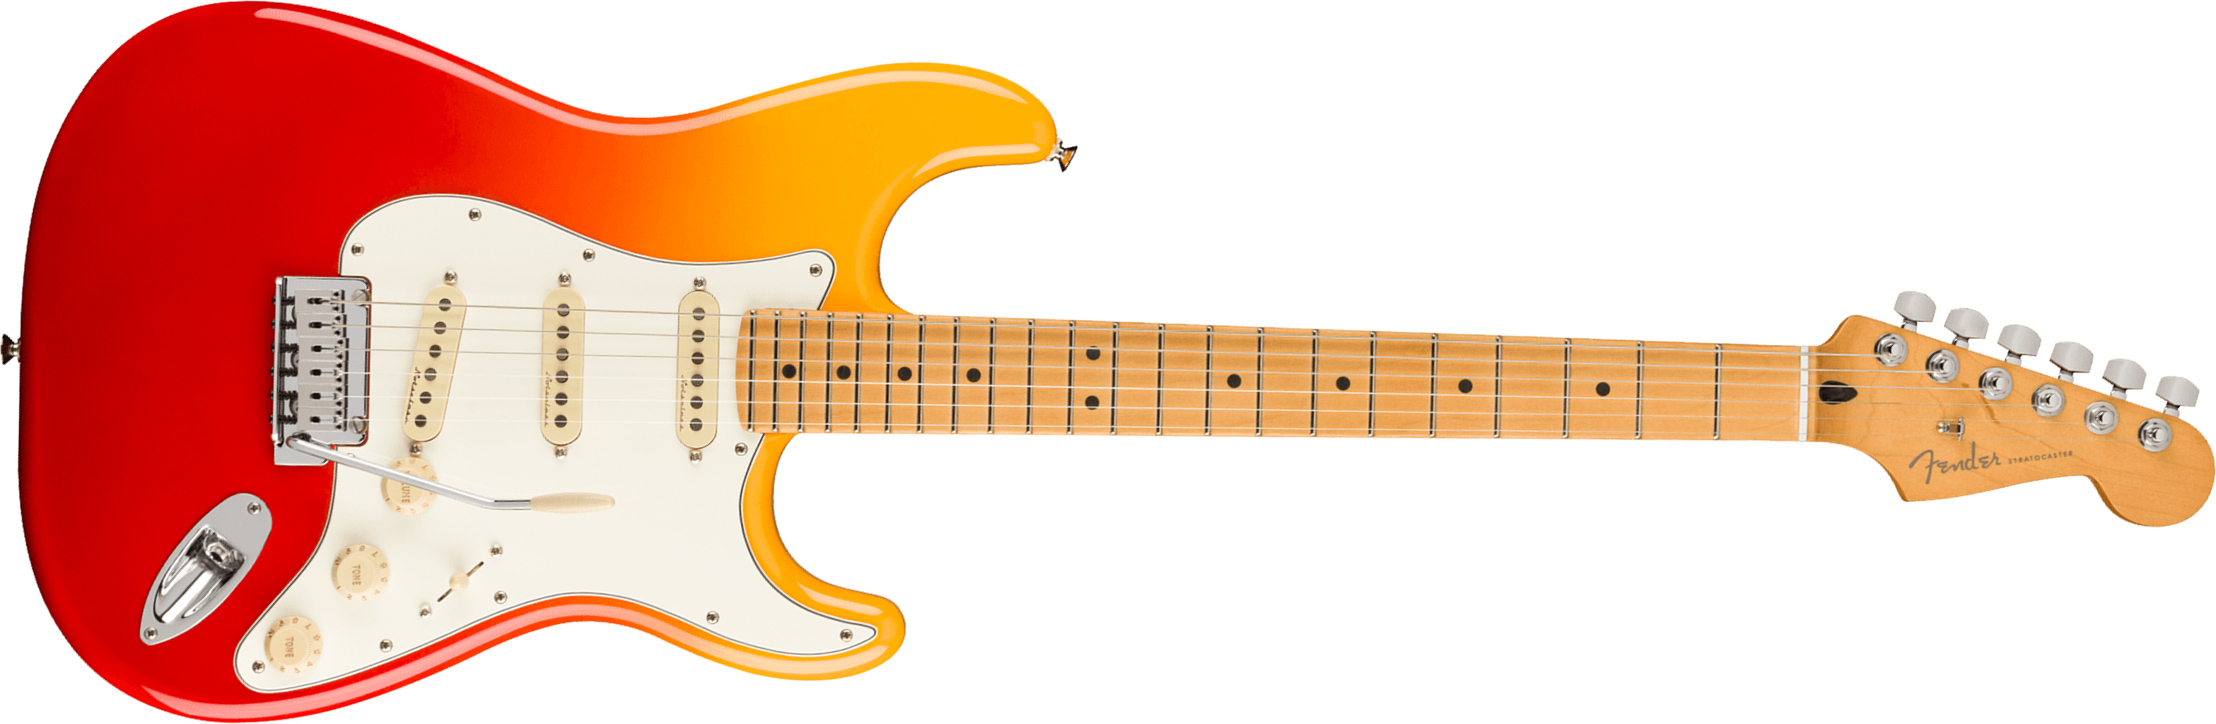 Fender Strat Player Plus Mex 3s Trem Mn - Tequila Sunrise - Elektrische gitaar in Str-vorm - Main picture